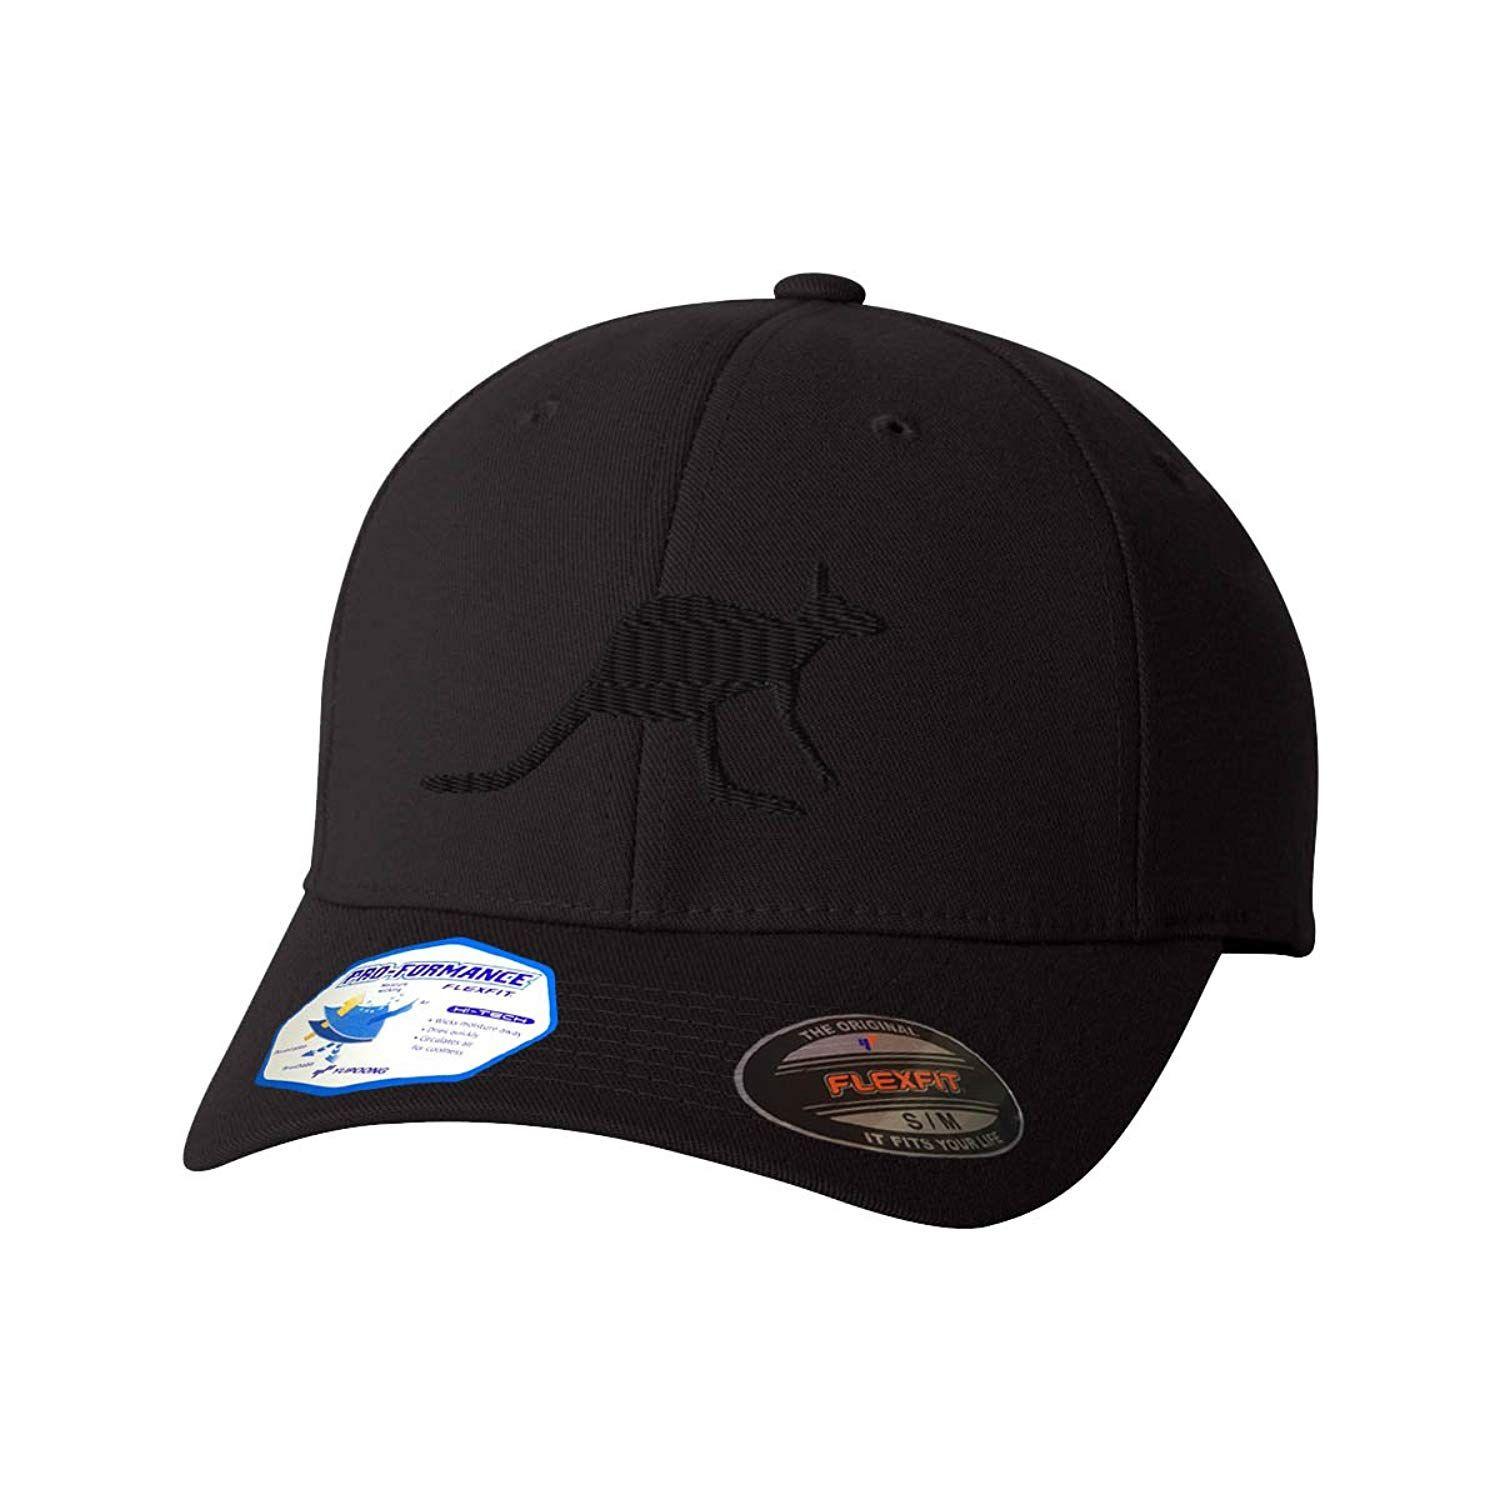 Hats with Kangaroo Logo - Amazon.com: Kangaroo Flexfit Pro-Formance Embroidered Cap Hat: Clothing